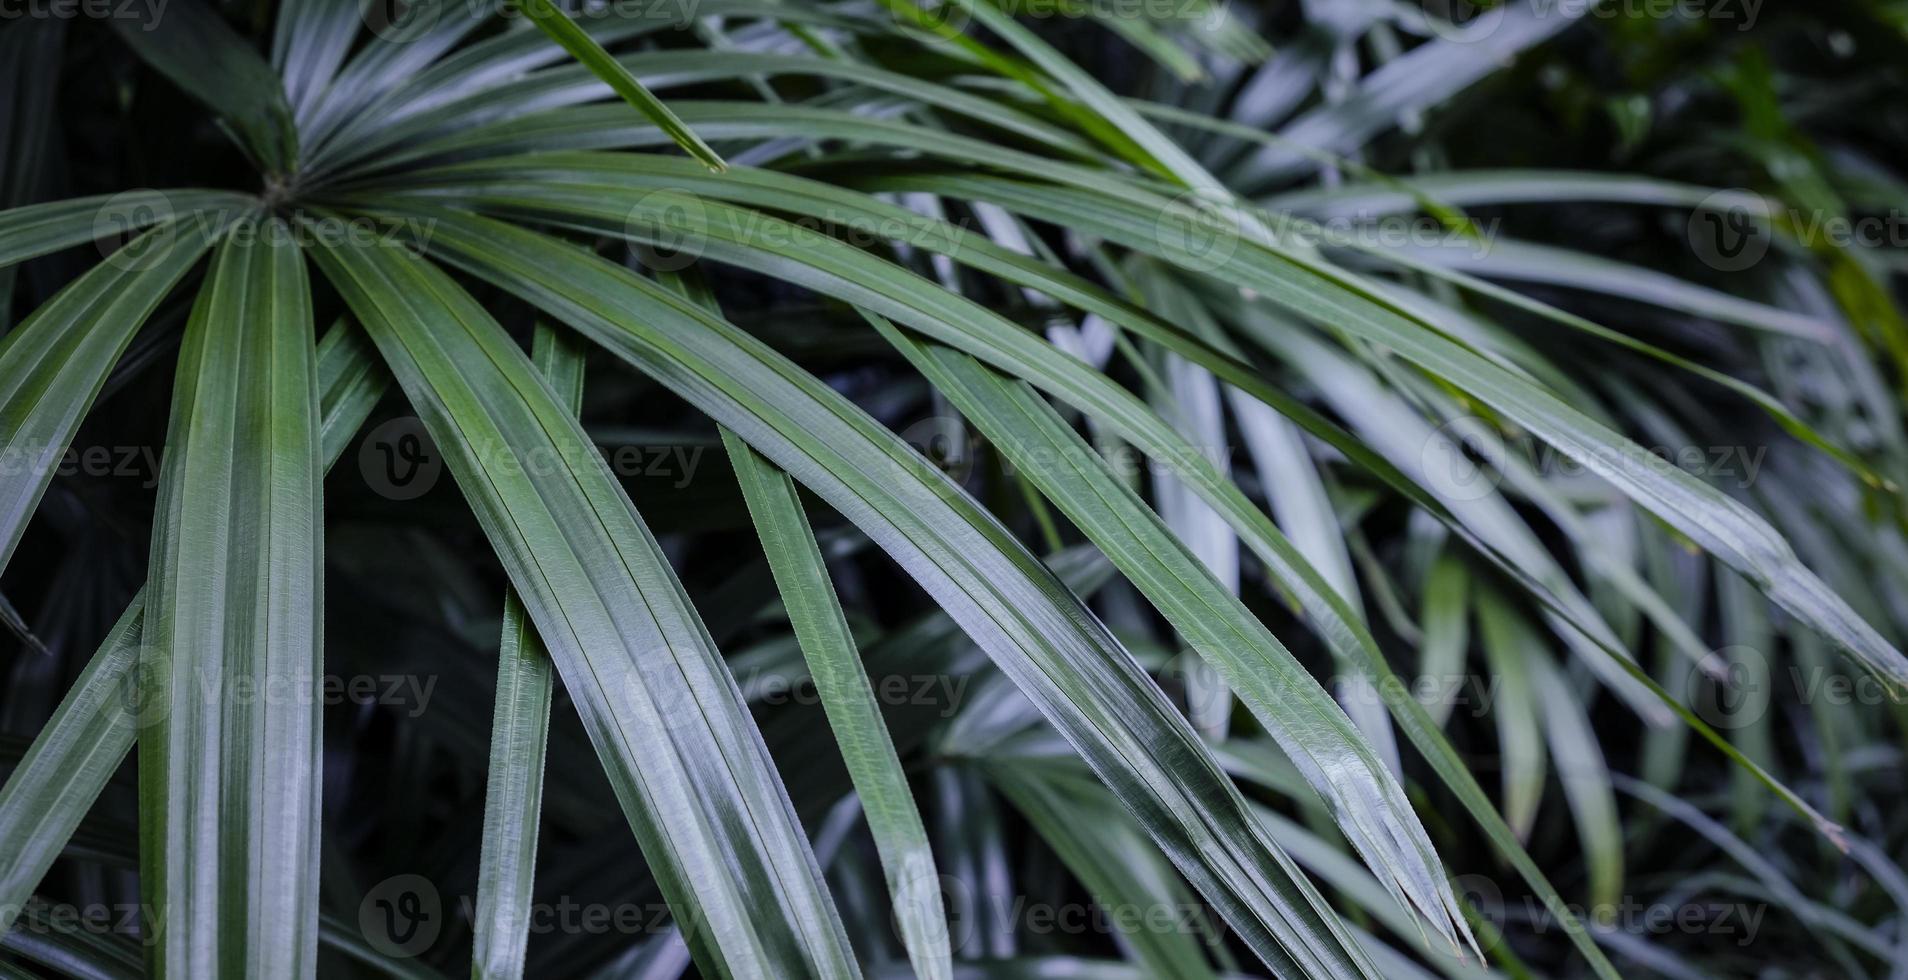 rhapis excelsa o dama palmera en el jardín fondo de hojas tropicales foto